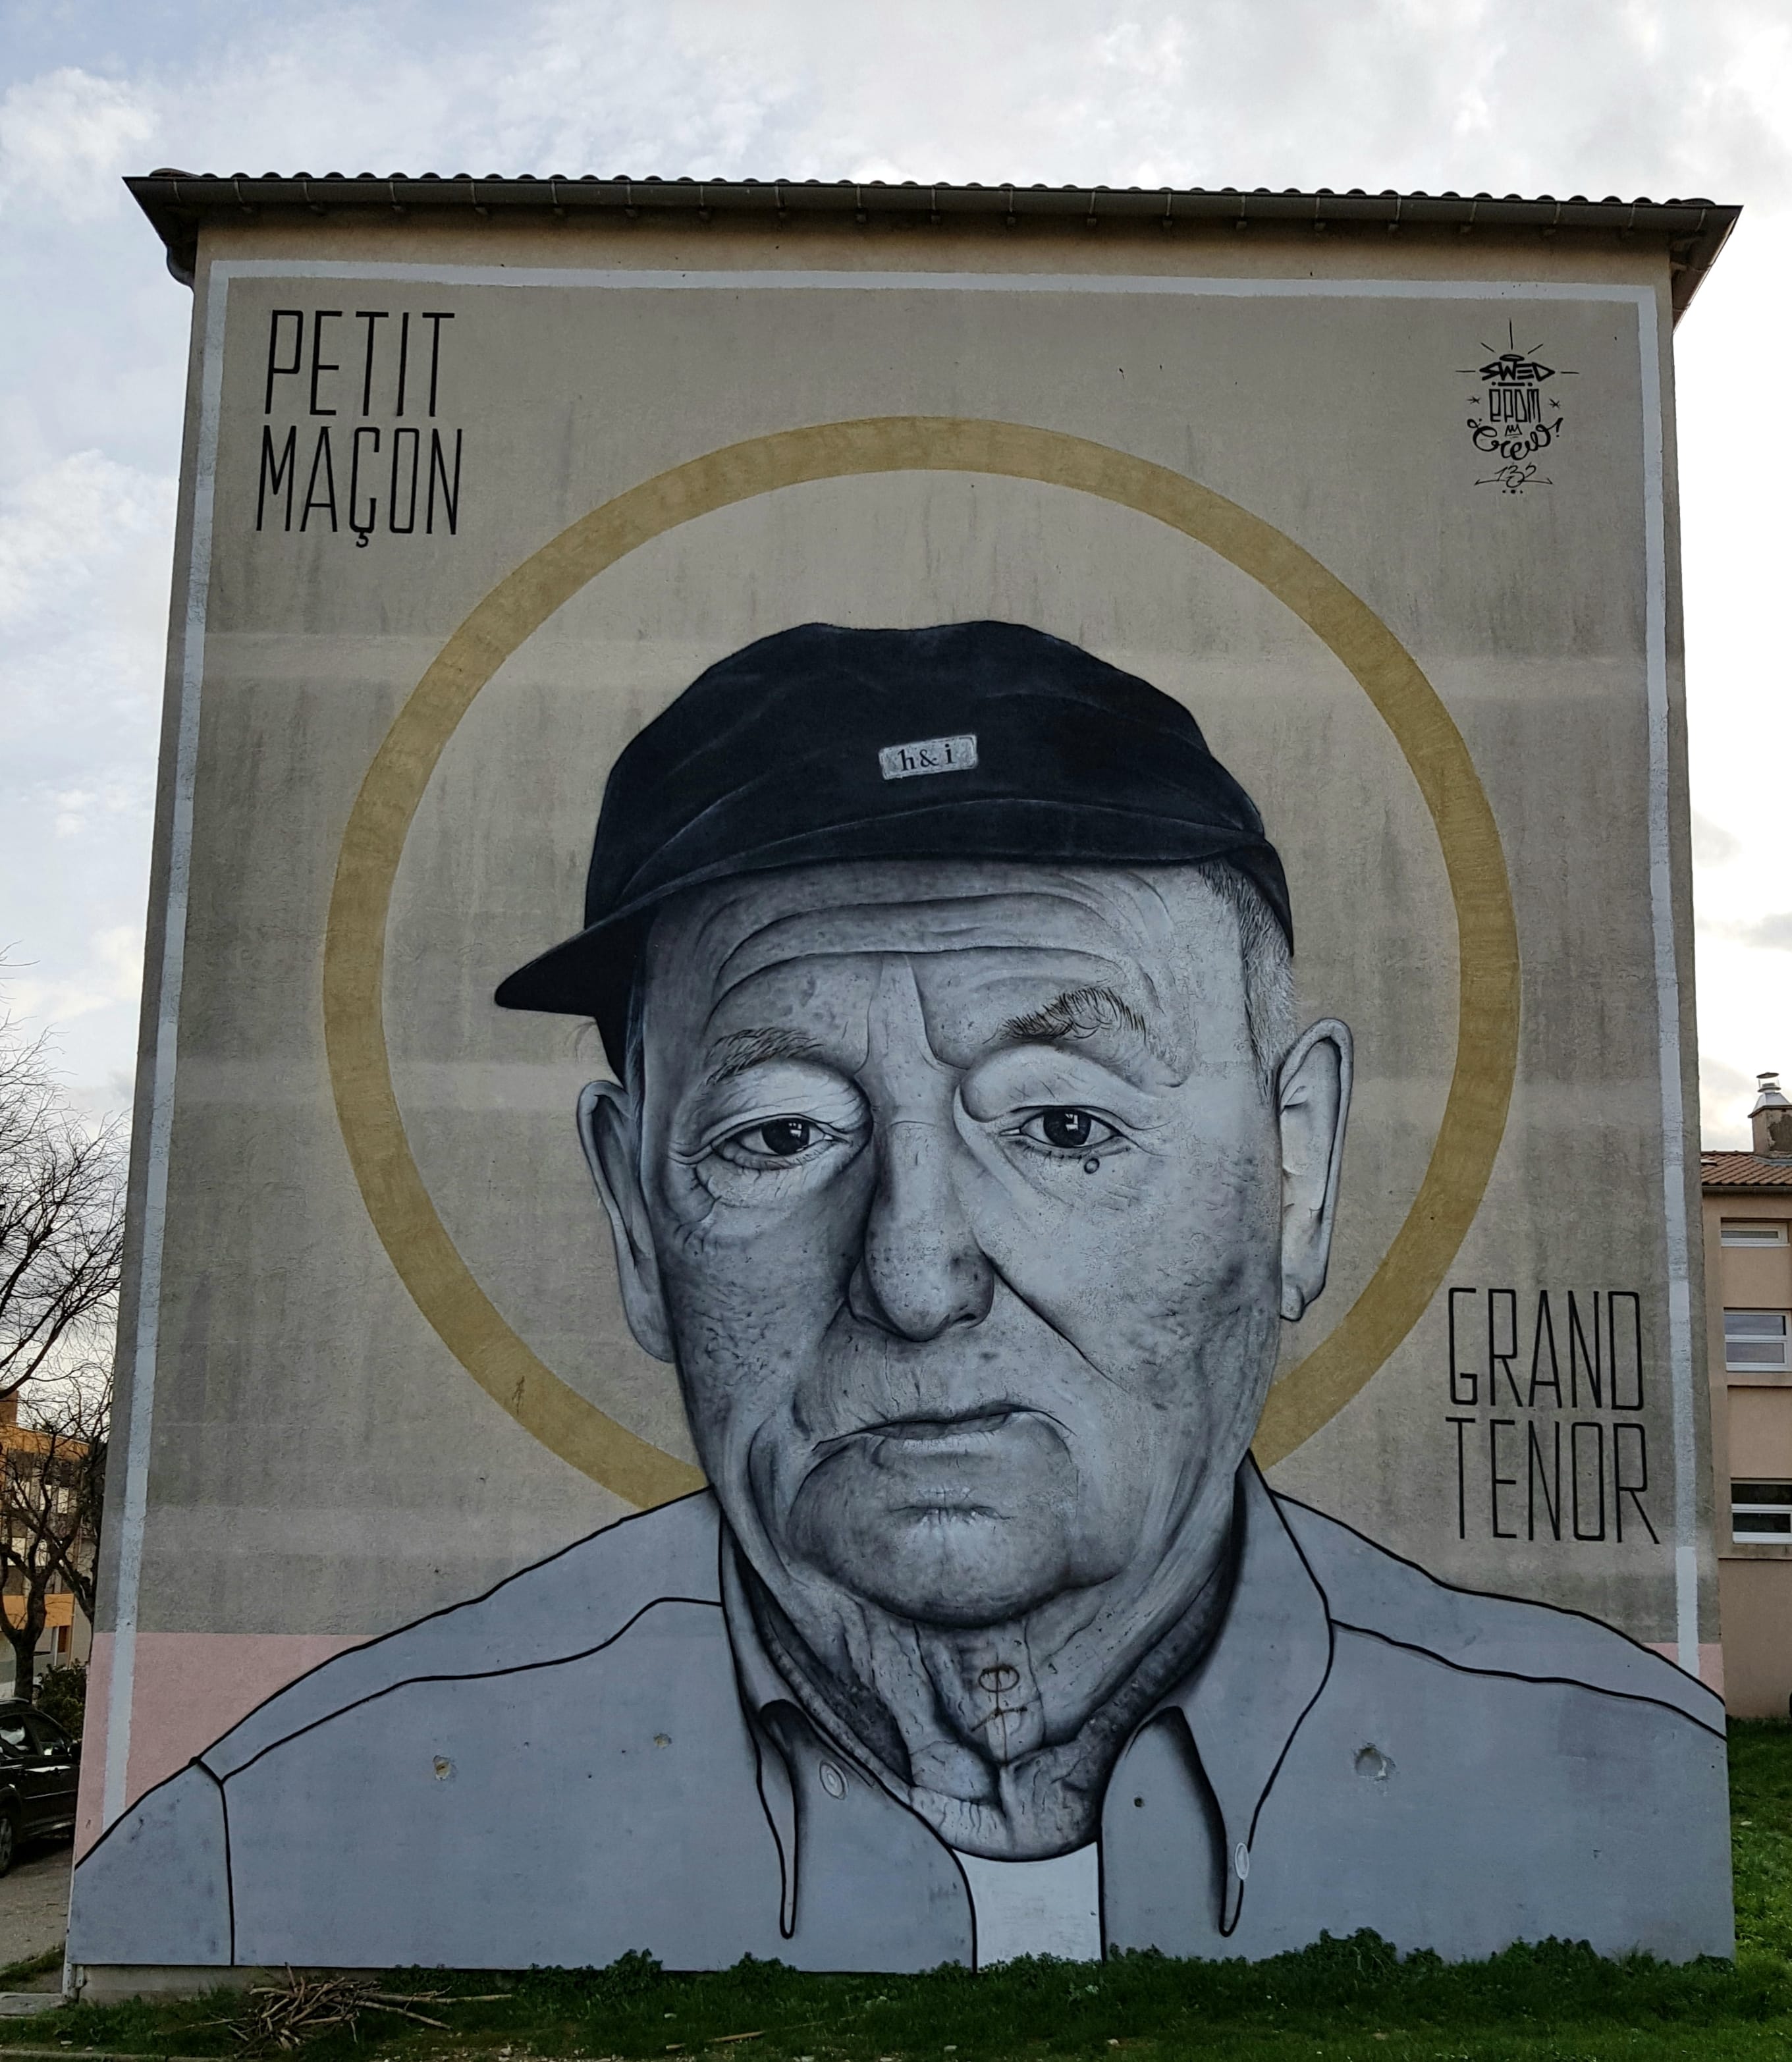 Graffiti 6497 Petit maçon, grand ténor de SWED ONER capturé par Mephisroth à Uzès France